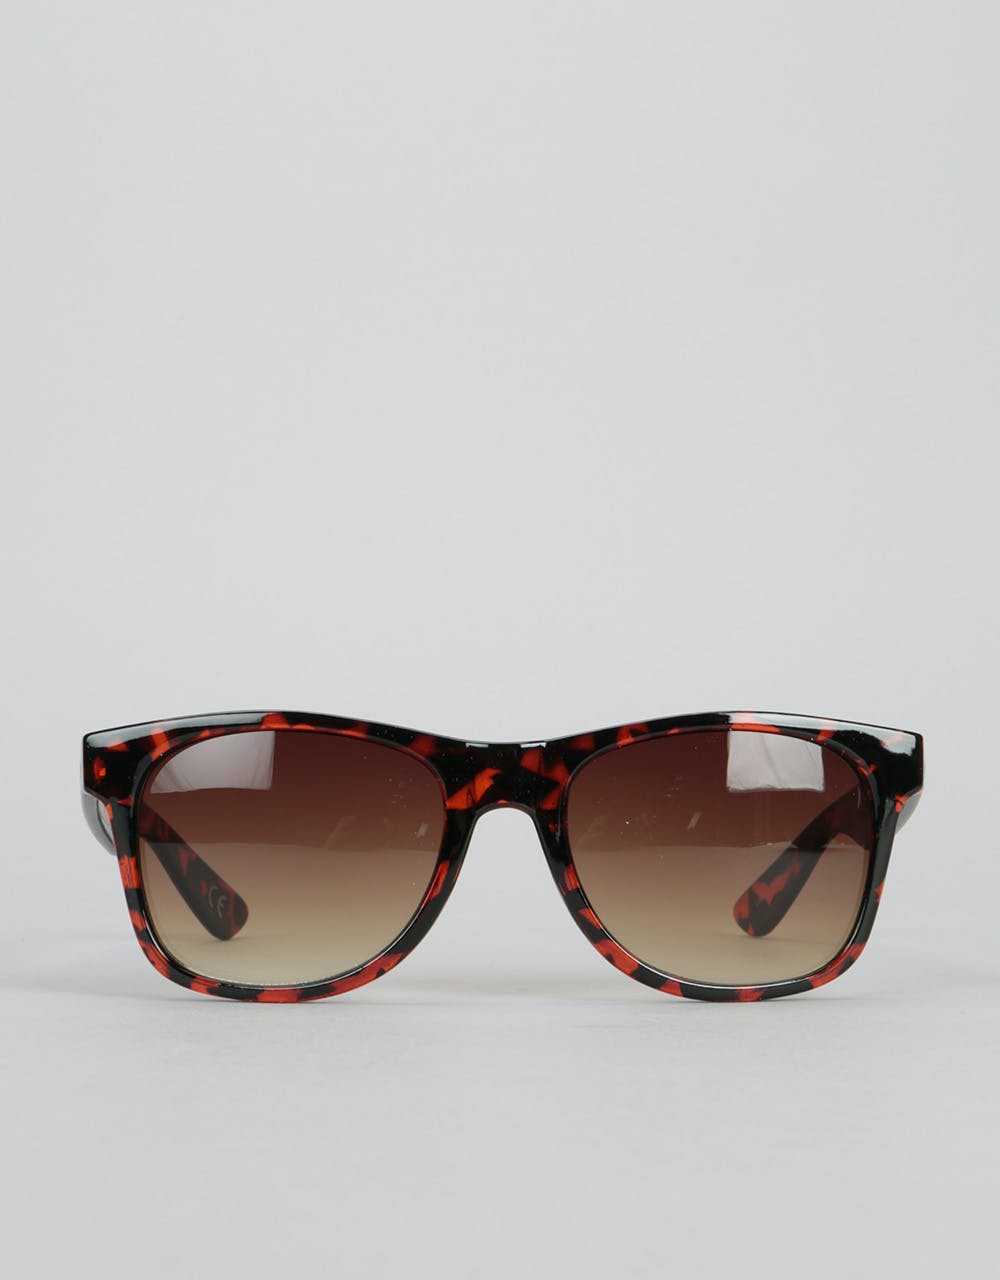 Vans Spicoli 4 Sunglasses - Tortoiseshell